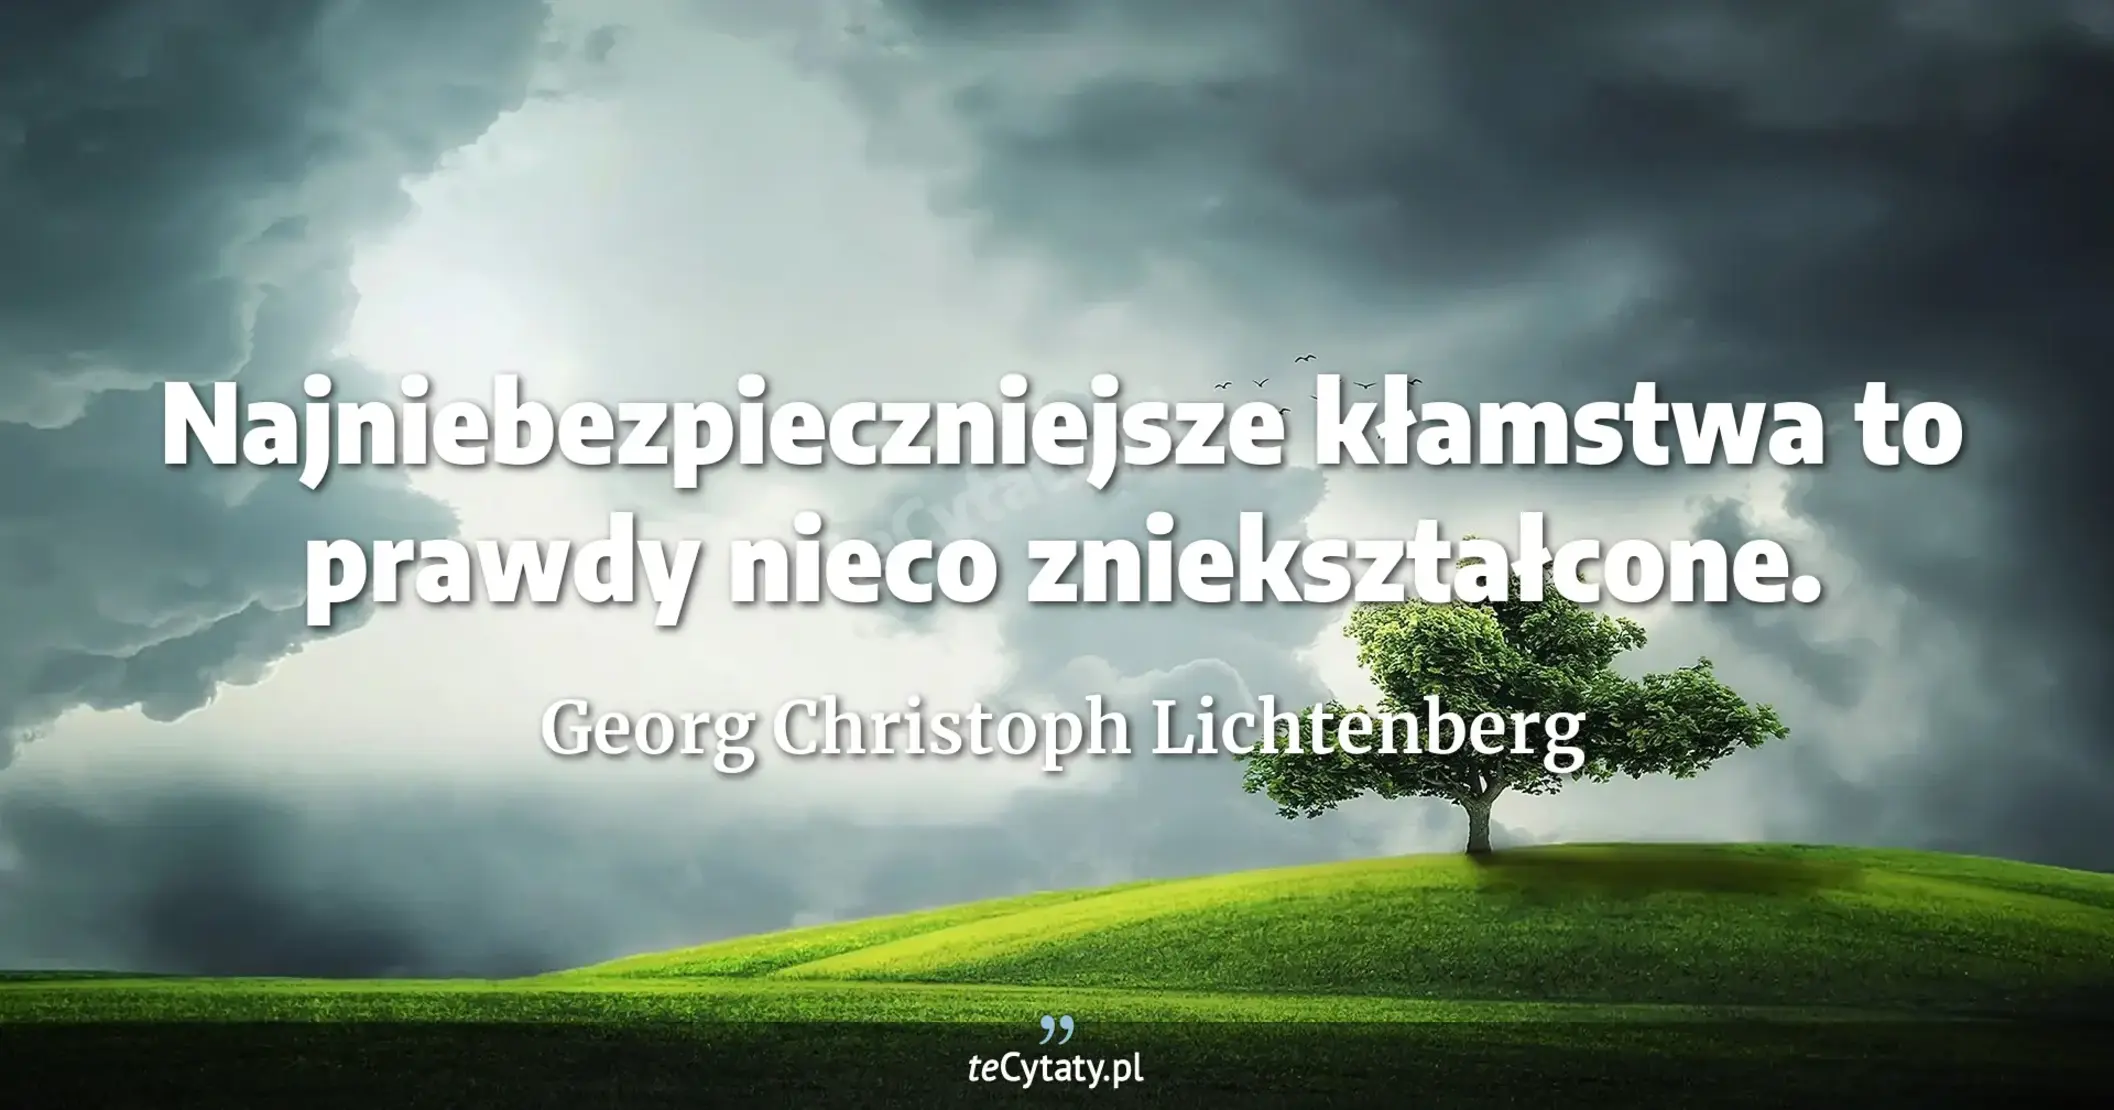 Najniebezpieczniejsze kłamstwa to prawdy nieco zniekształcone. - Georg Christoph Lichtenberg